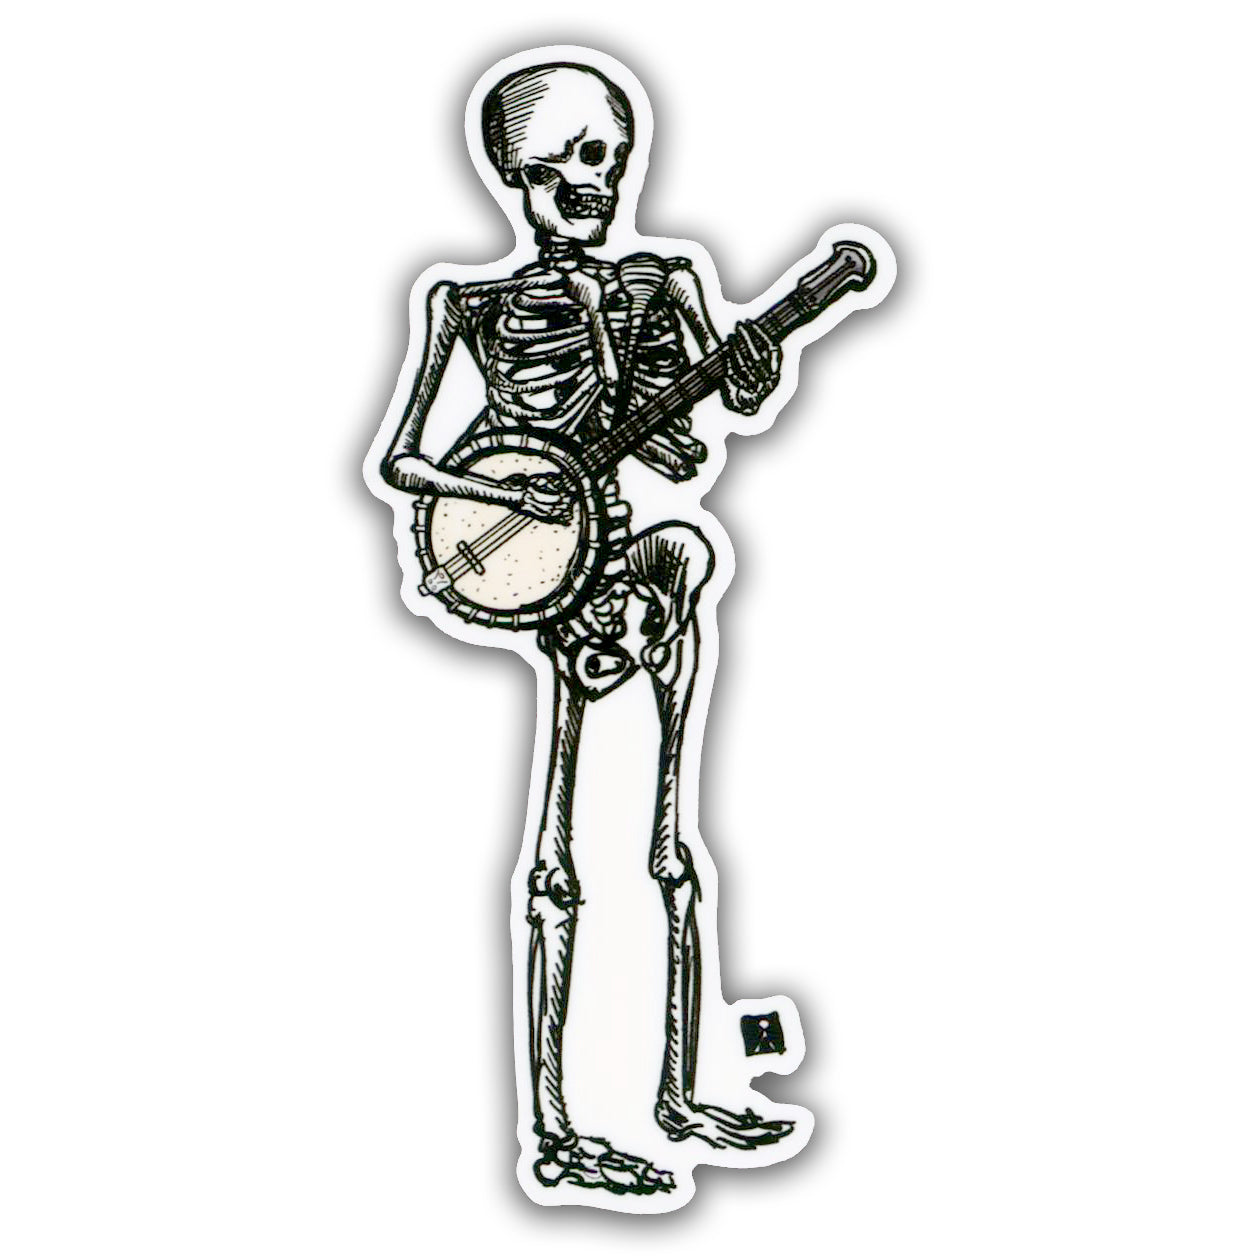 Skeleton Playing Banjo Sticker